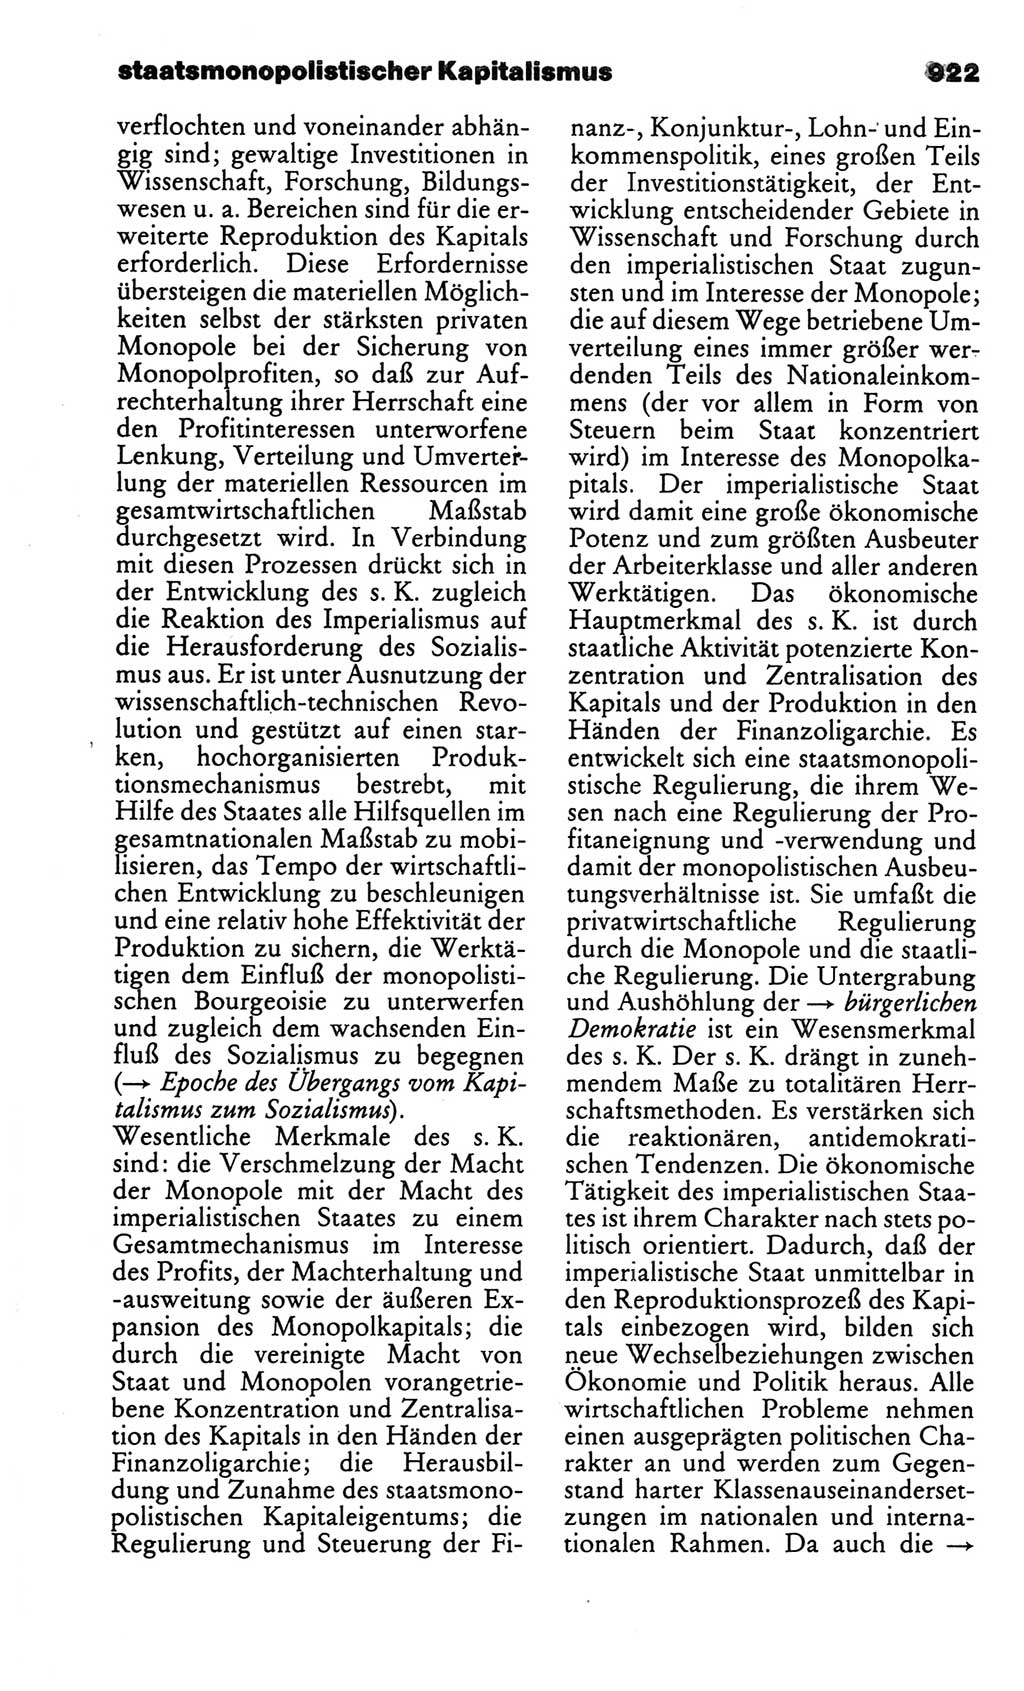 Kleines politisches Wörterbuch [Deutsche Demokratische Republik (DDR)] 1986, Seite 922 (Kl. pol. Wb. DDR 1986, S. 922)